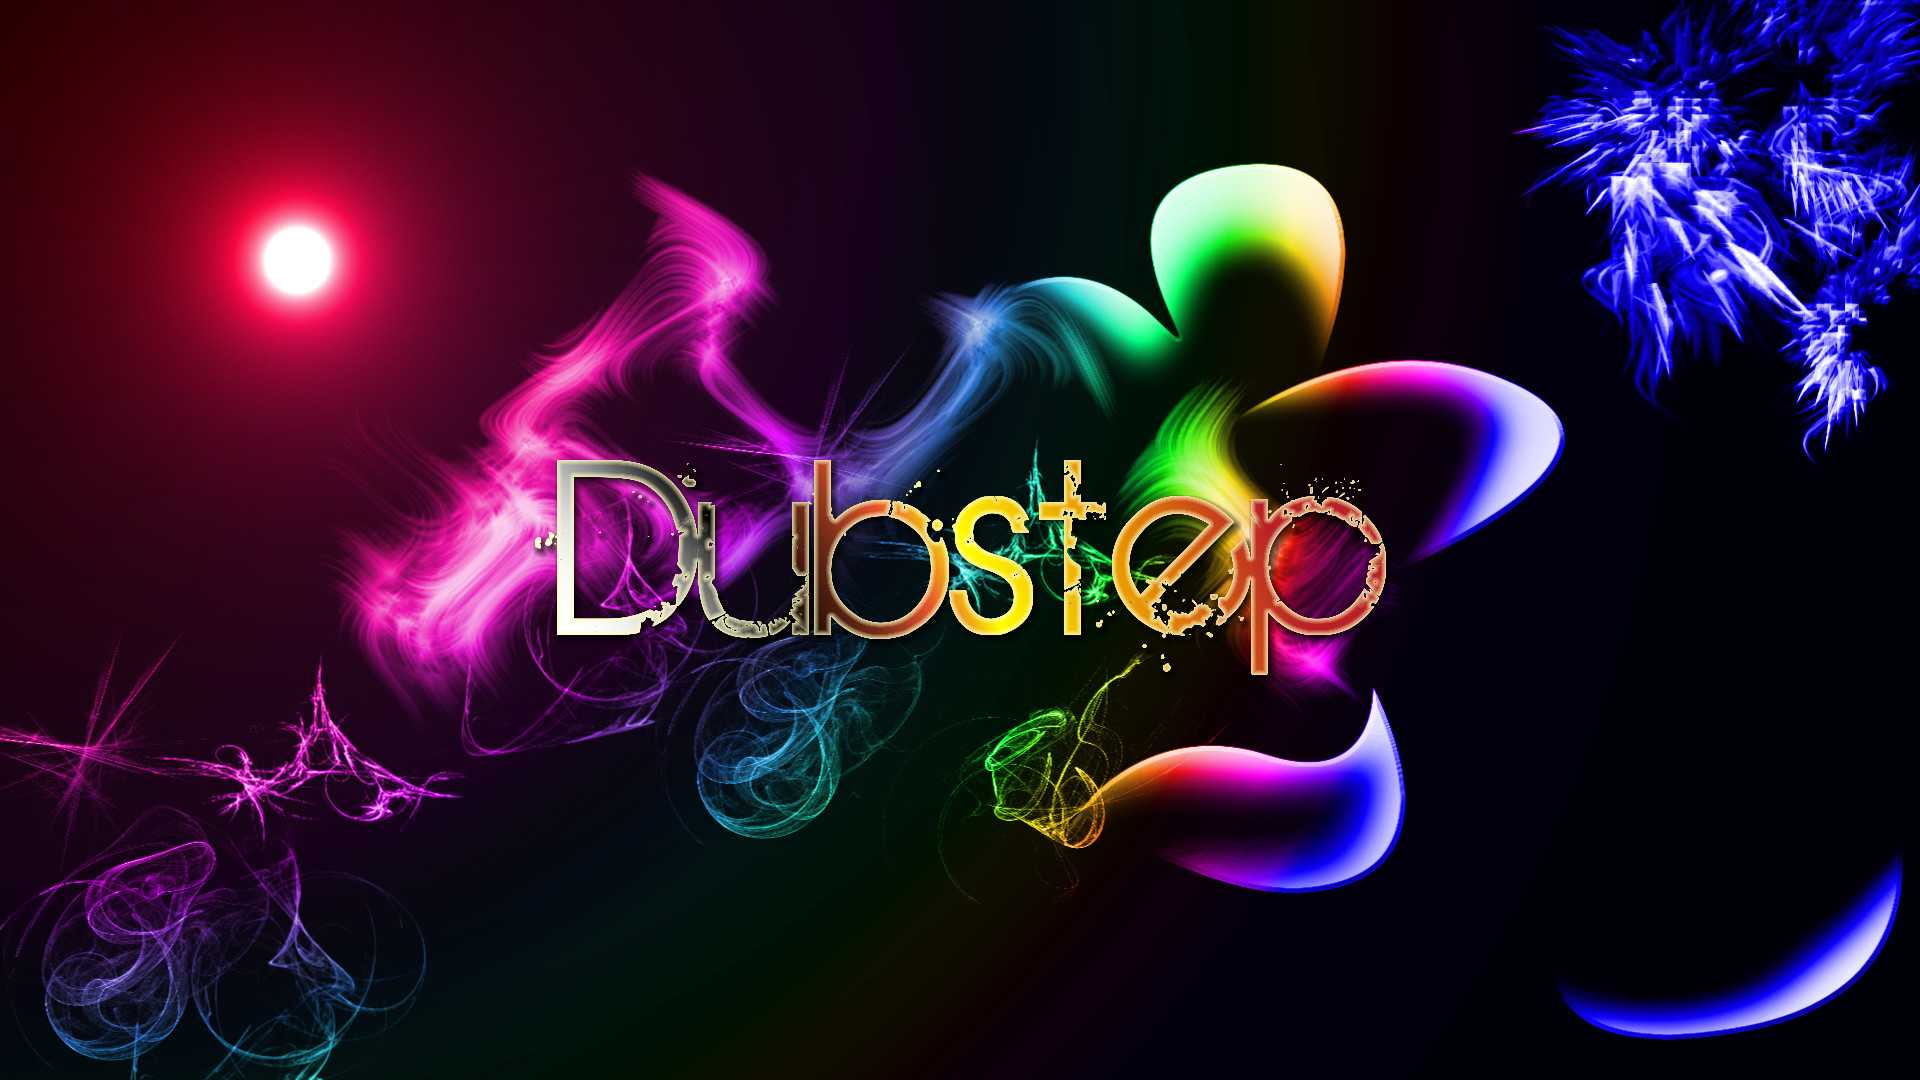 Радио dubstep №1 - слушать музыку дабстеп онлайн бесплатно